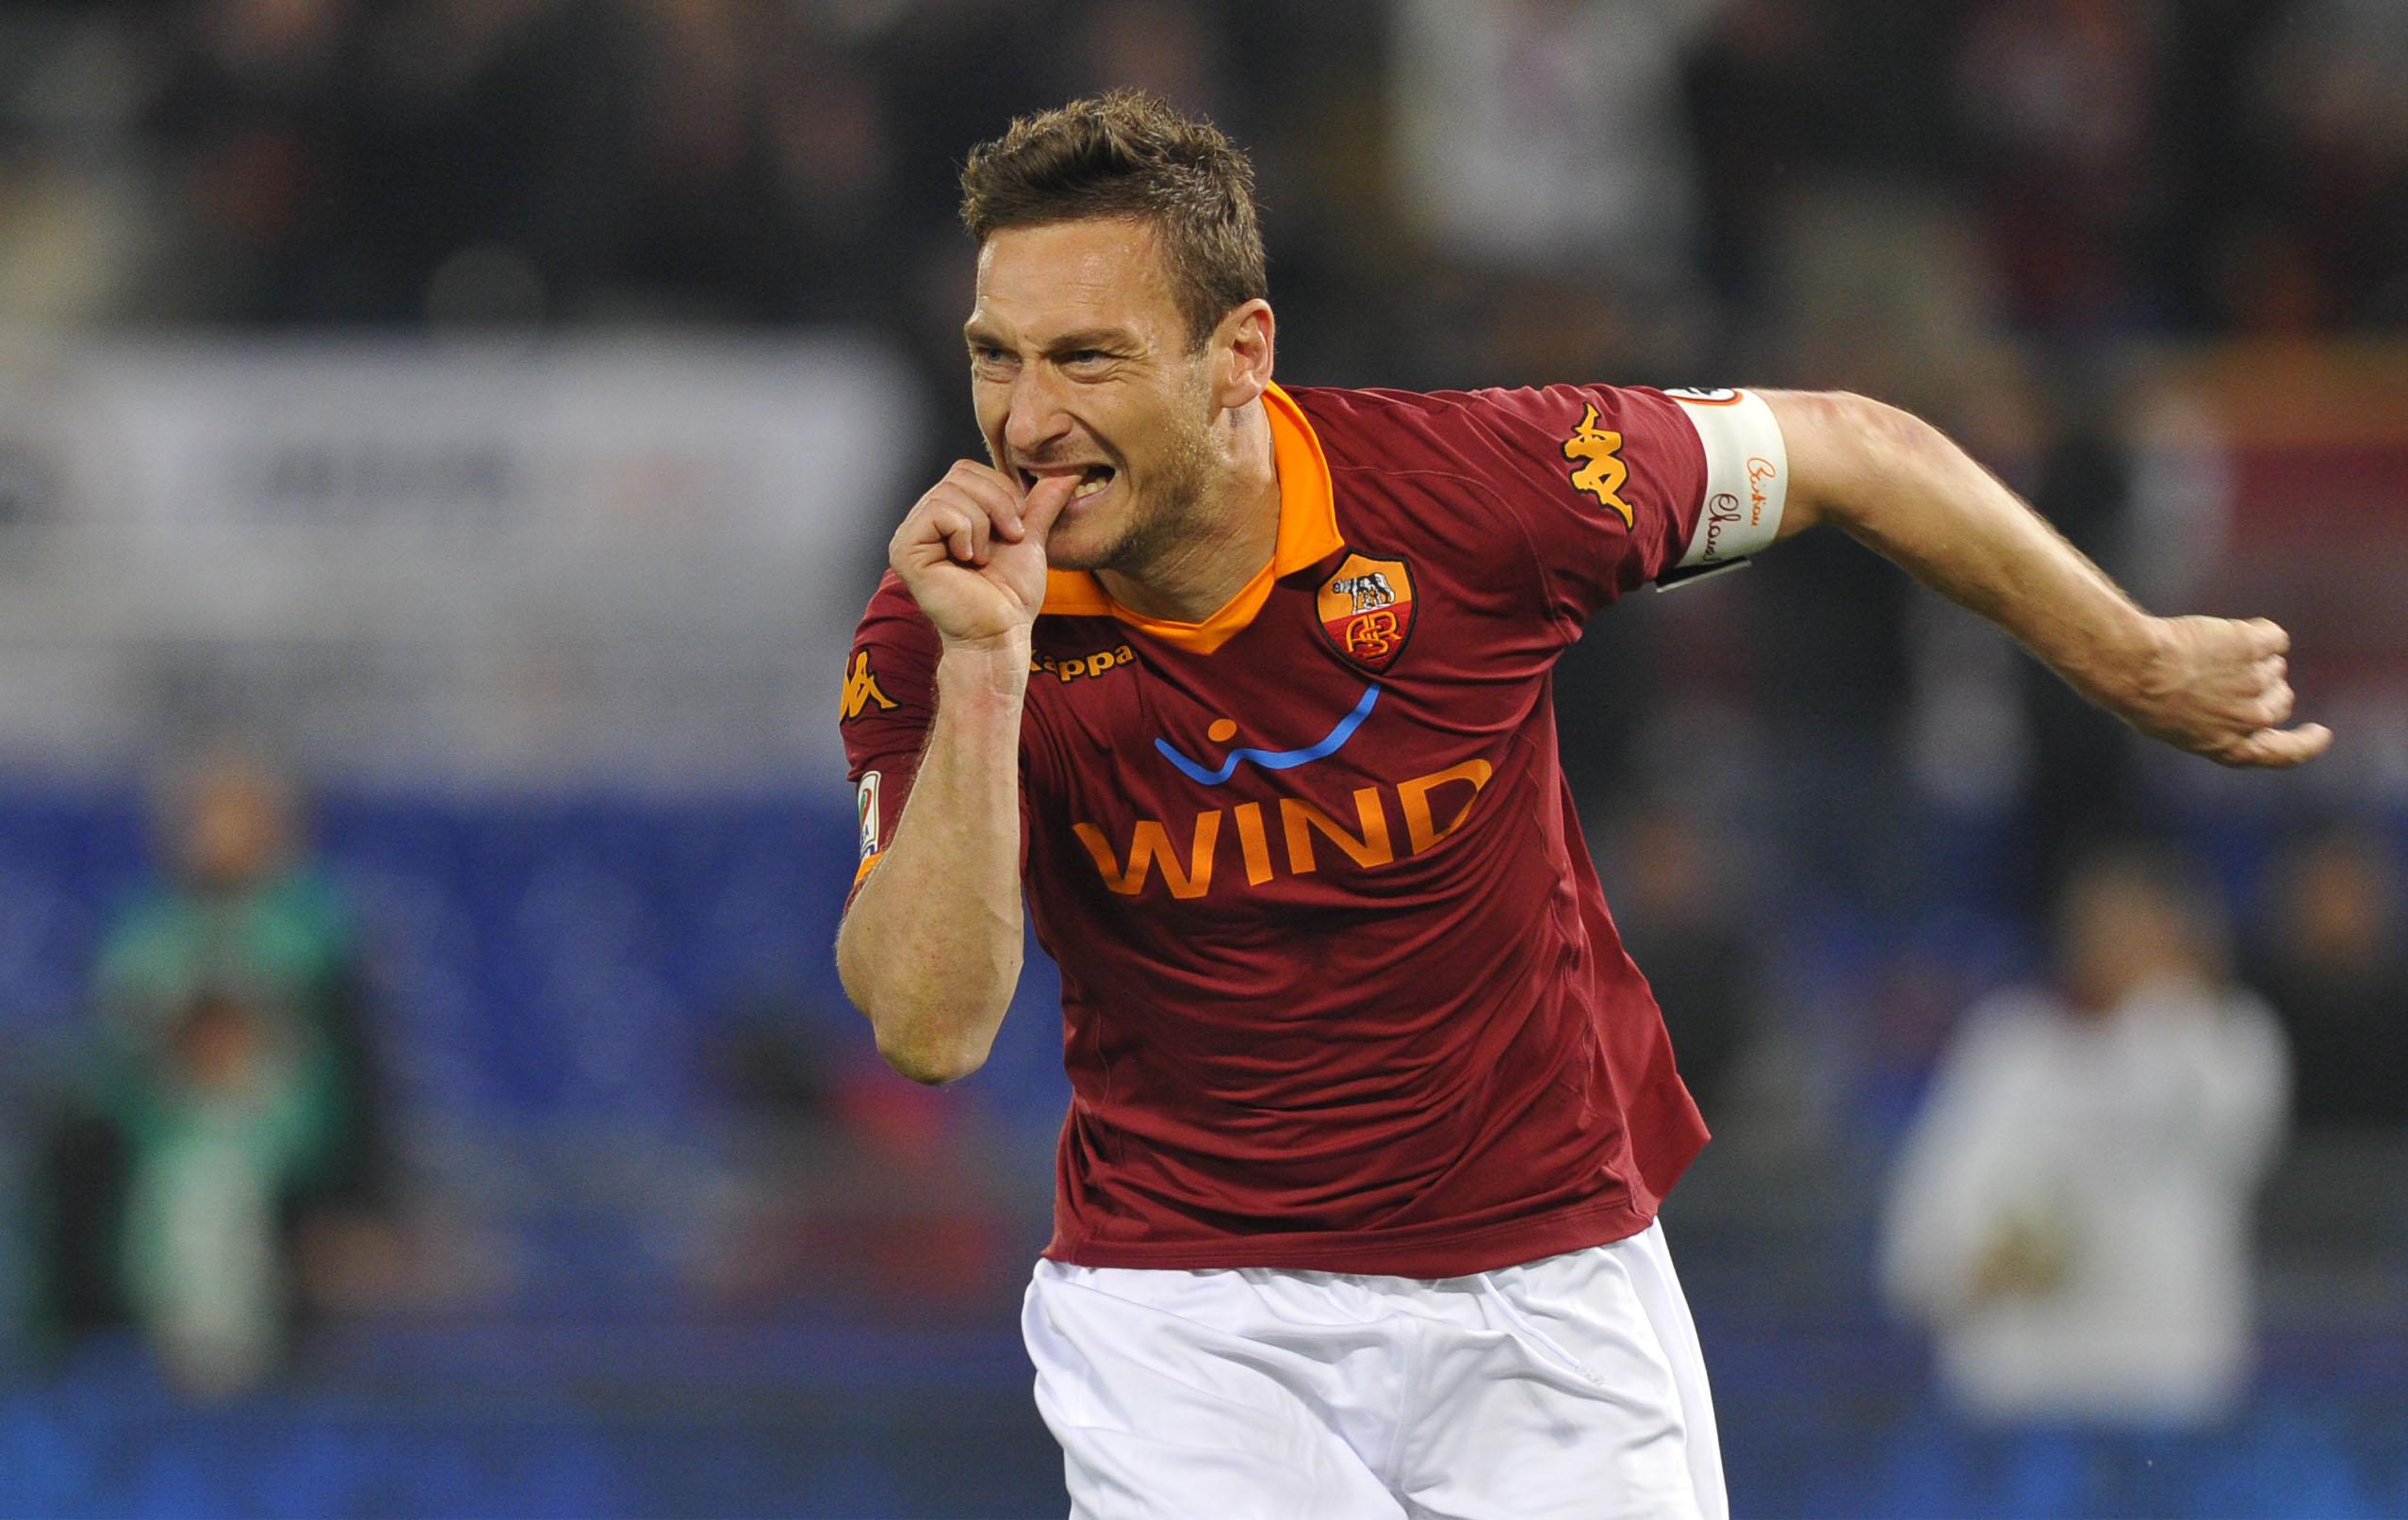 L'esultanza dopo il gol di Francesco Totti nel derby Roma-Lazio dell'8/04/2013 - Infophoto